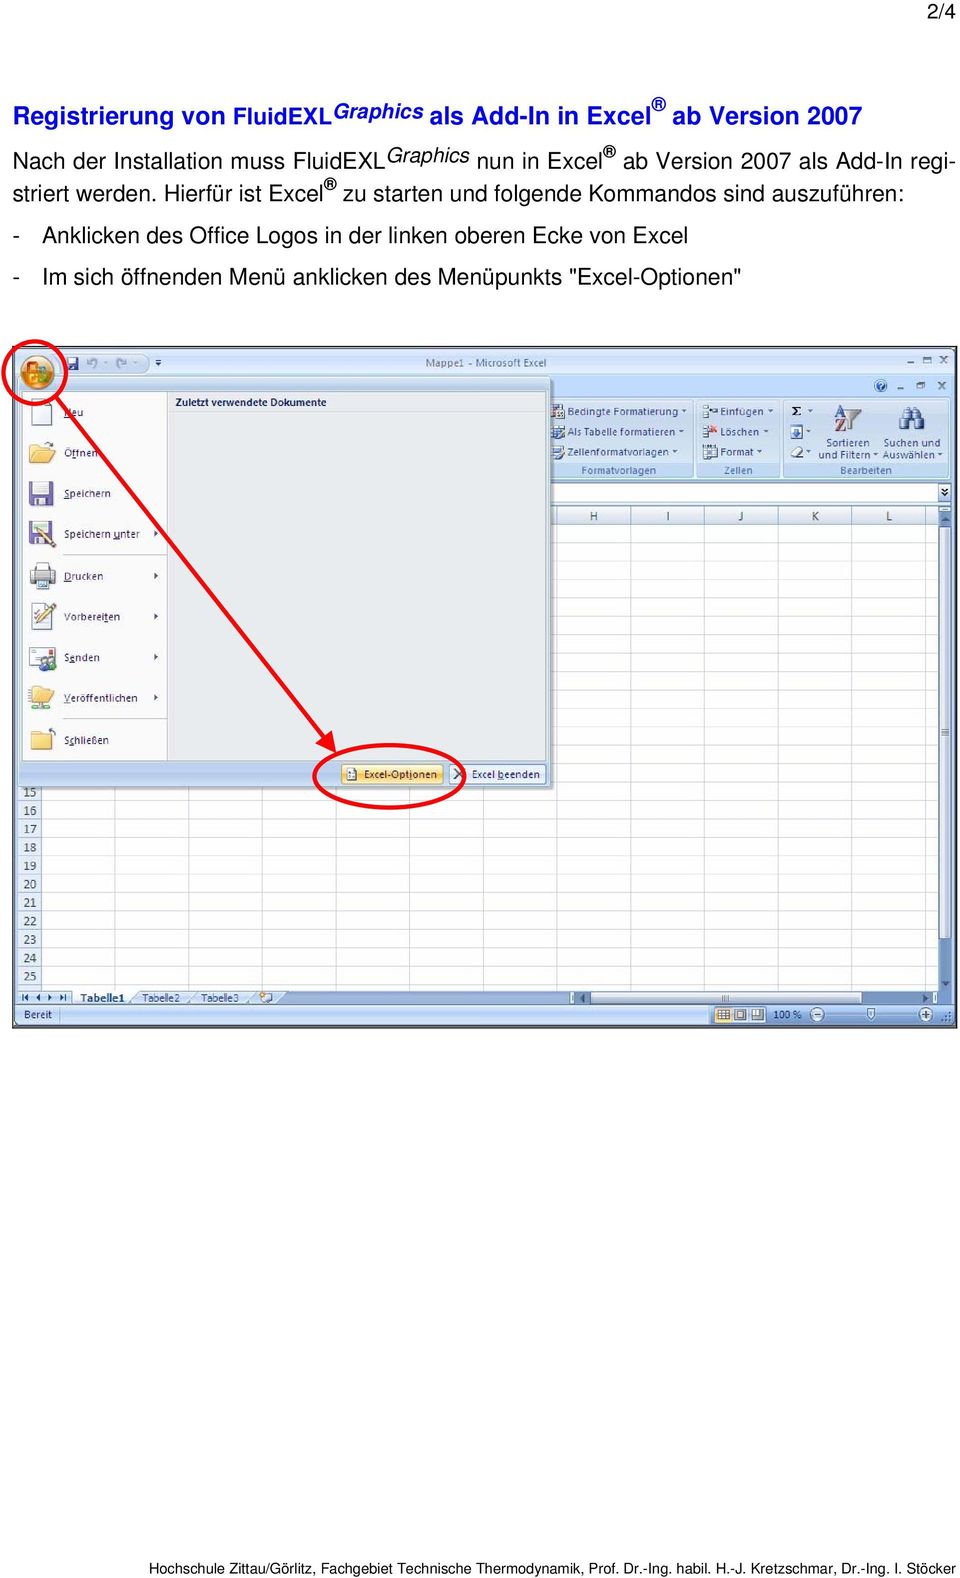 Hierfür ist Excel zu starten und folgende Kommandos sind auszuführen: - Anklicken des Office